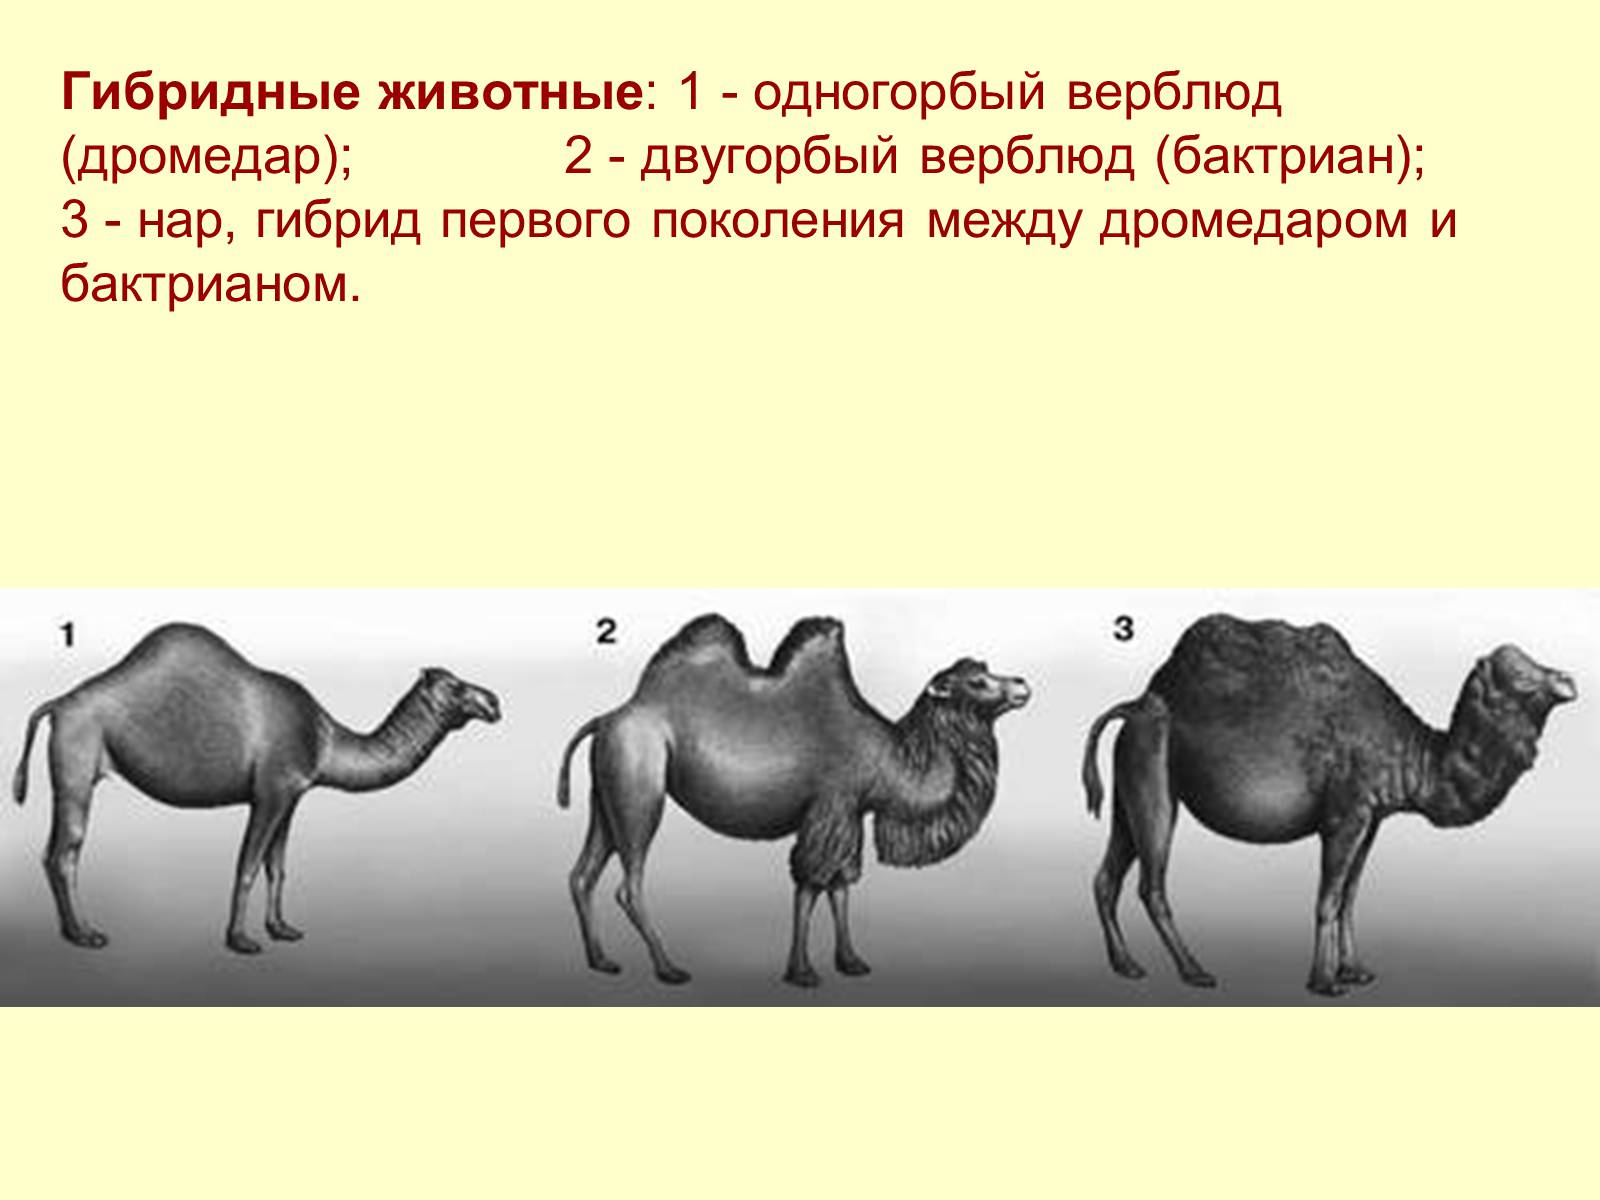 Гибрид это простыми словами. Двугорбый верблюд бактриан Родина. Селекция двугорбый верблюд. Верблюд двугорбый Туркменистан. Нар одногорбый верблюд.